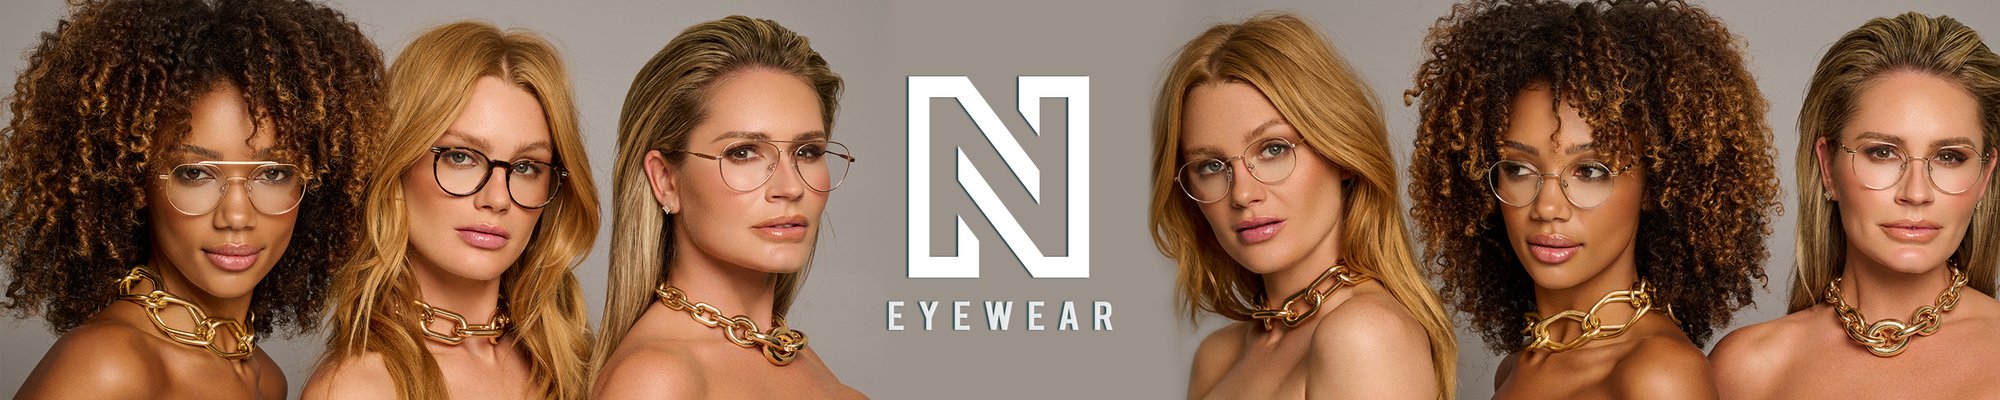 Nikkie Eyewear glasses